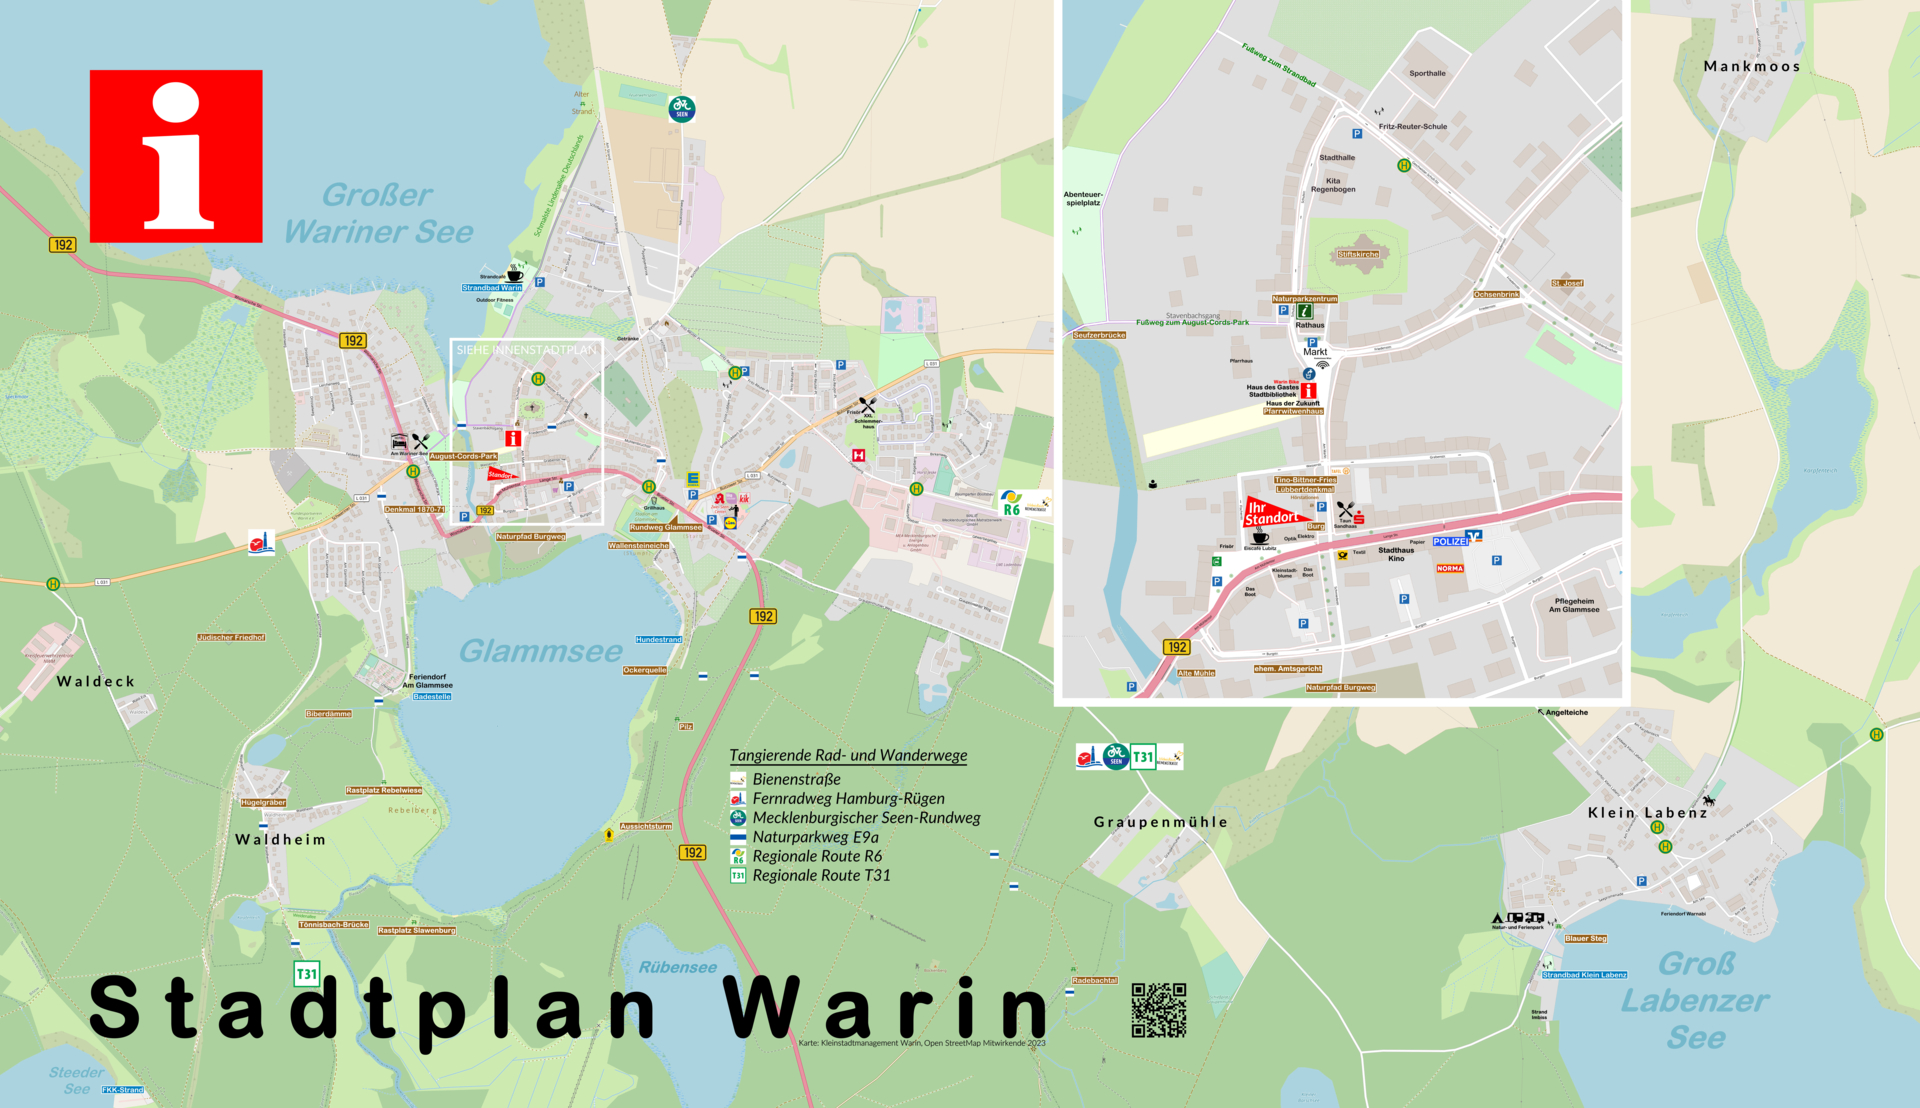 Stadtplan Warin / Klein Labenz